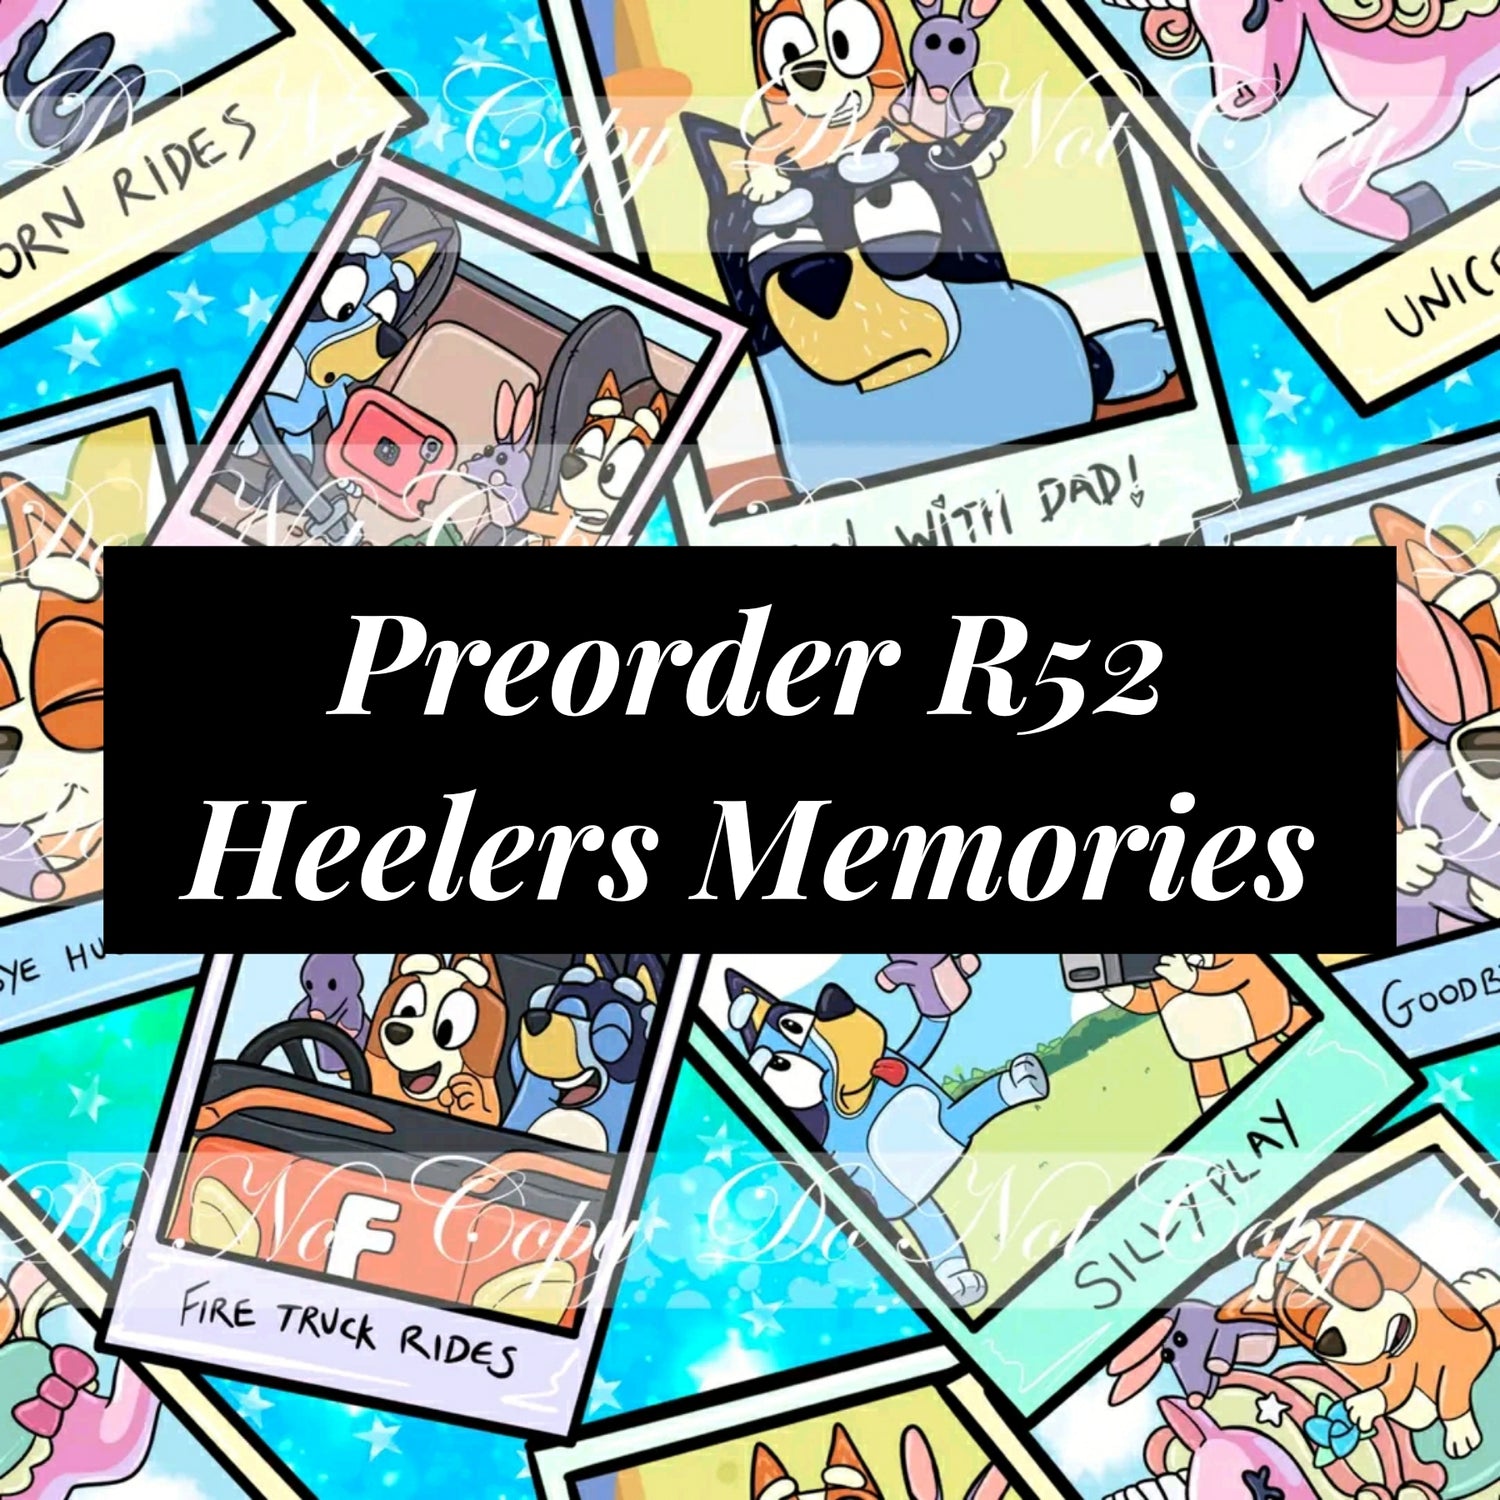 Preorder R52 Heelers Memories